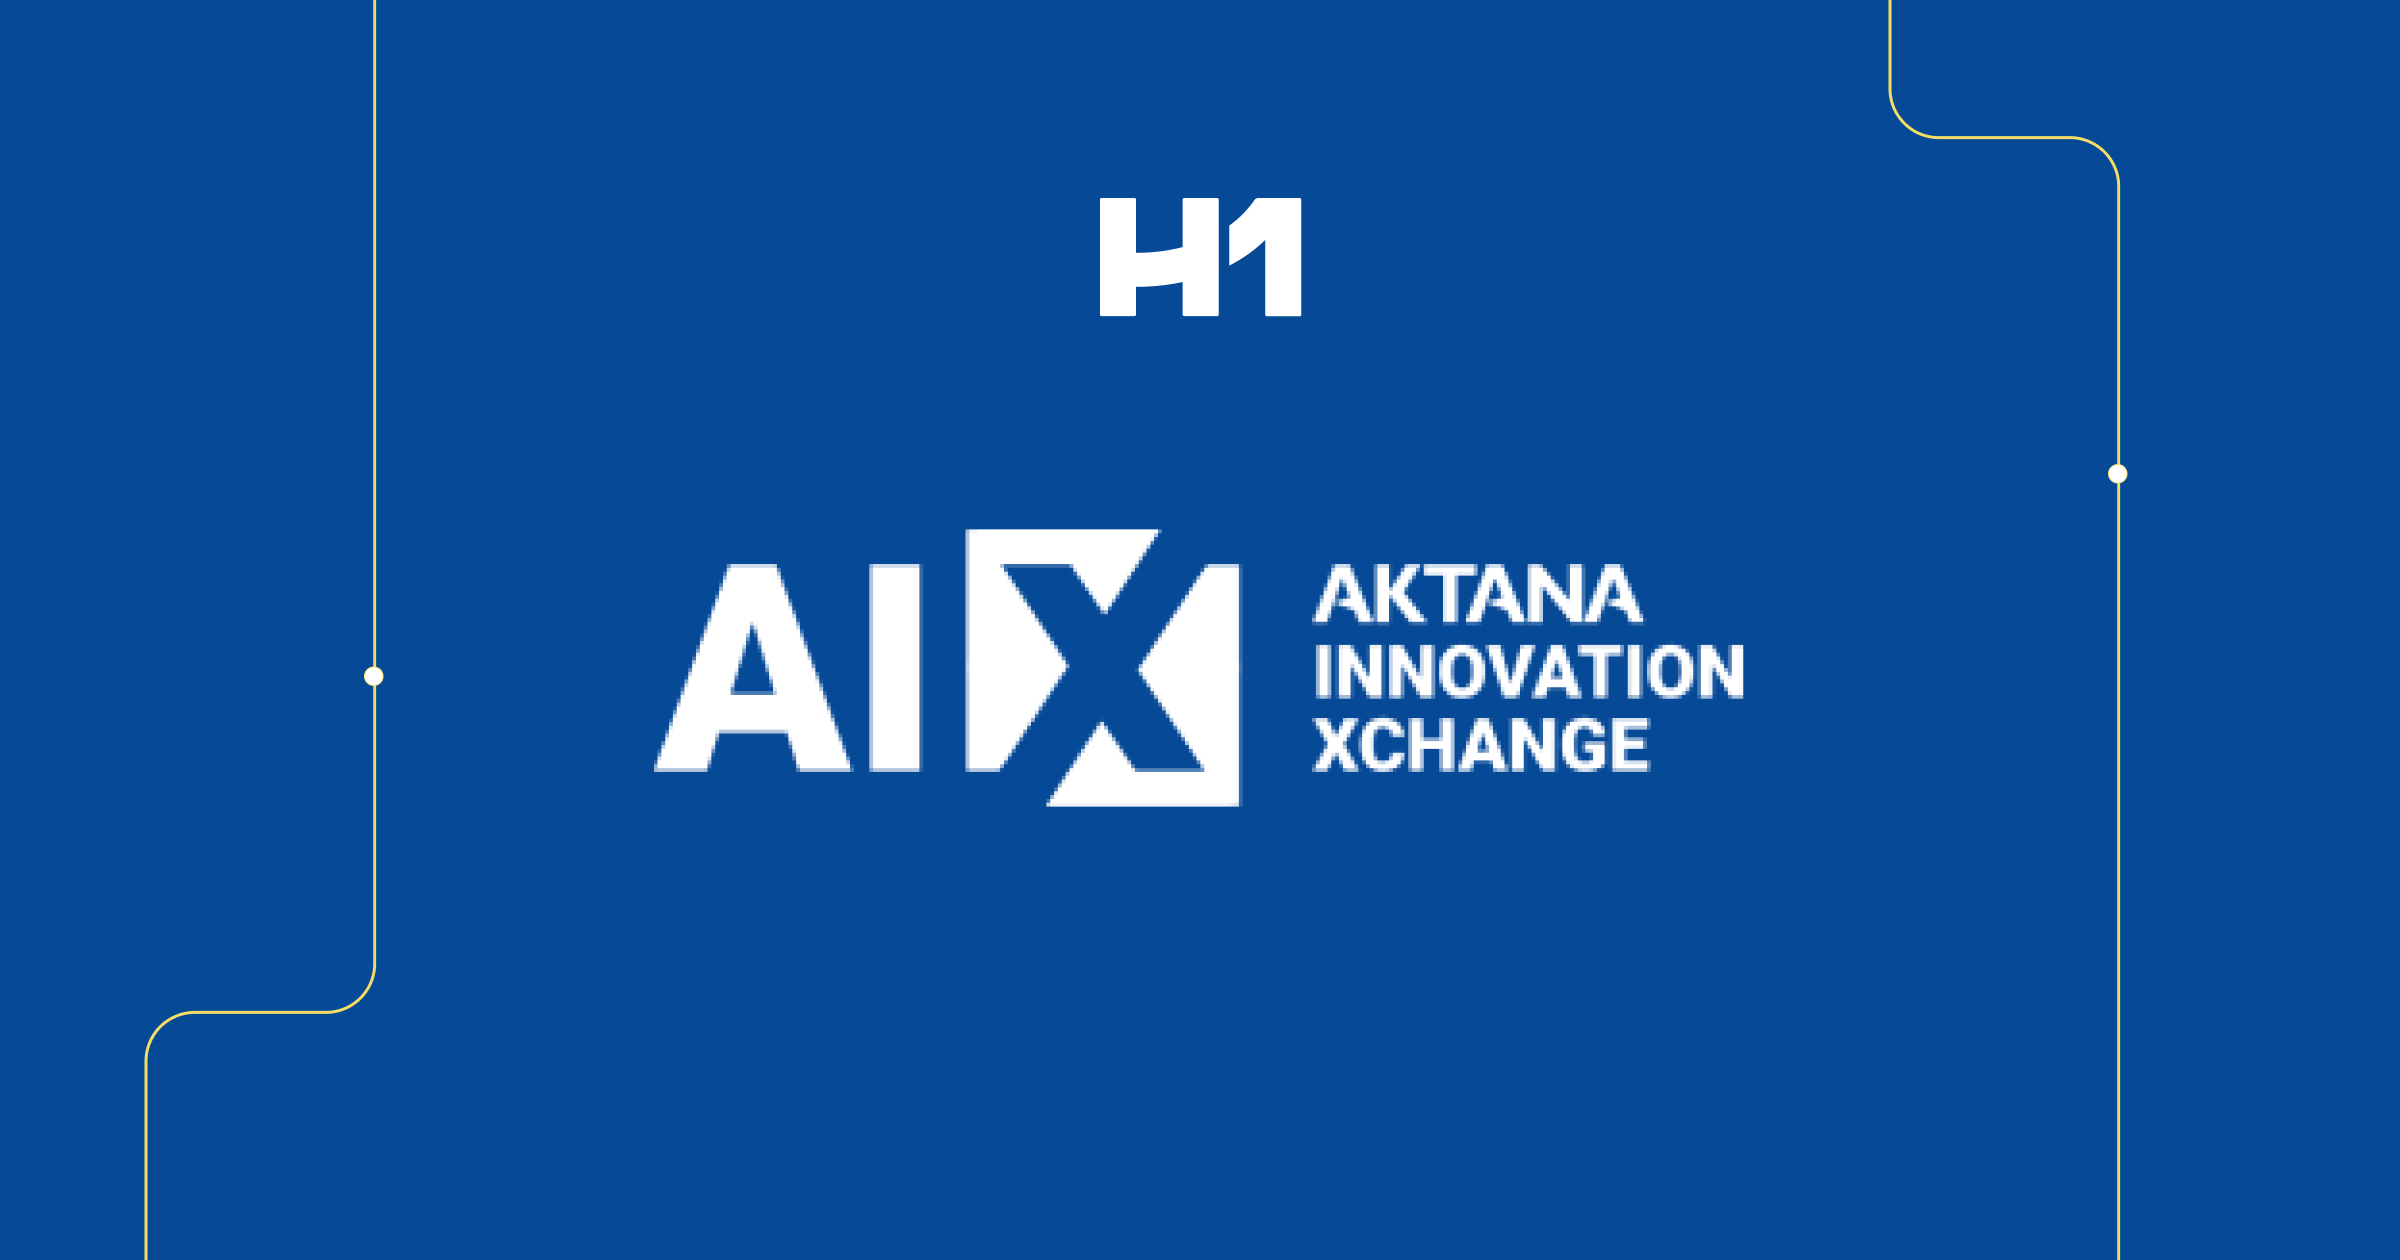 AI X - Aktana Innovation Xchange